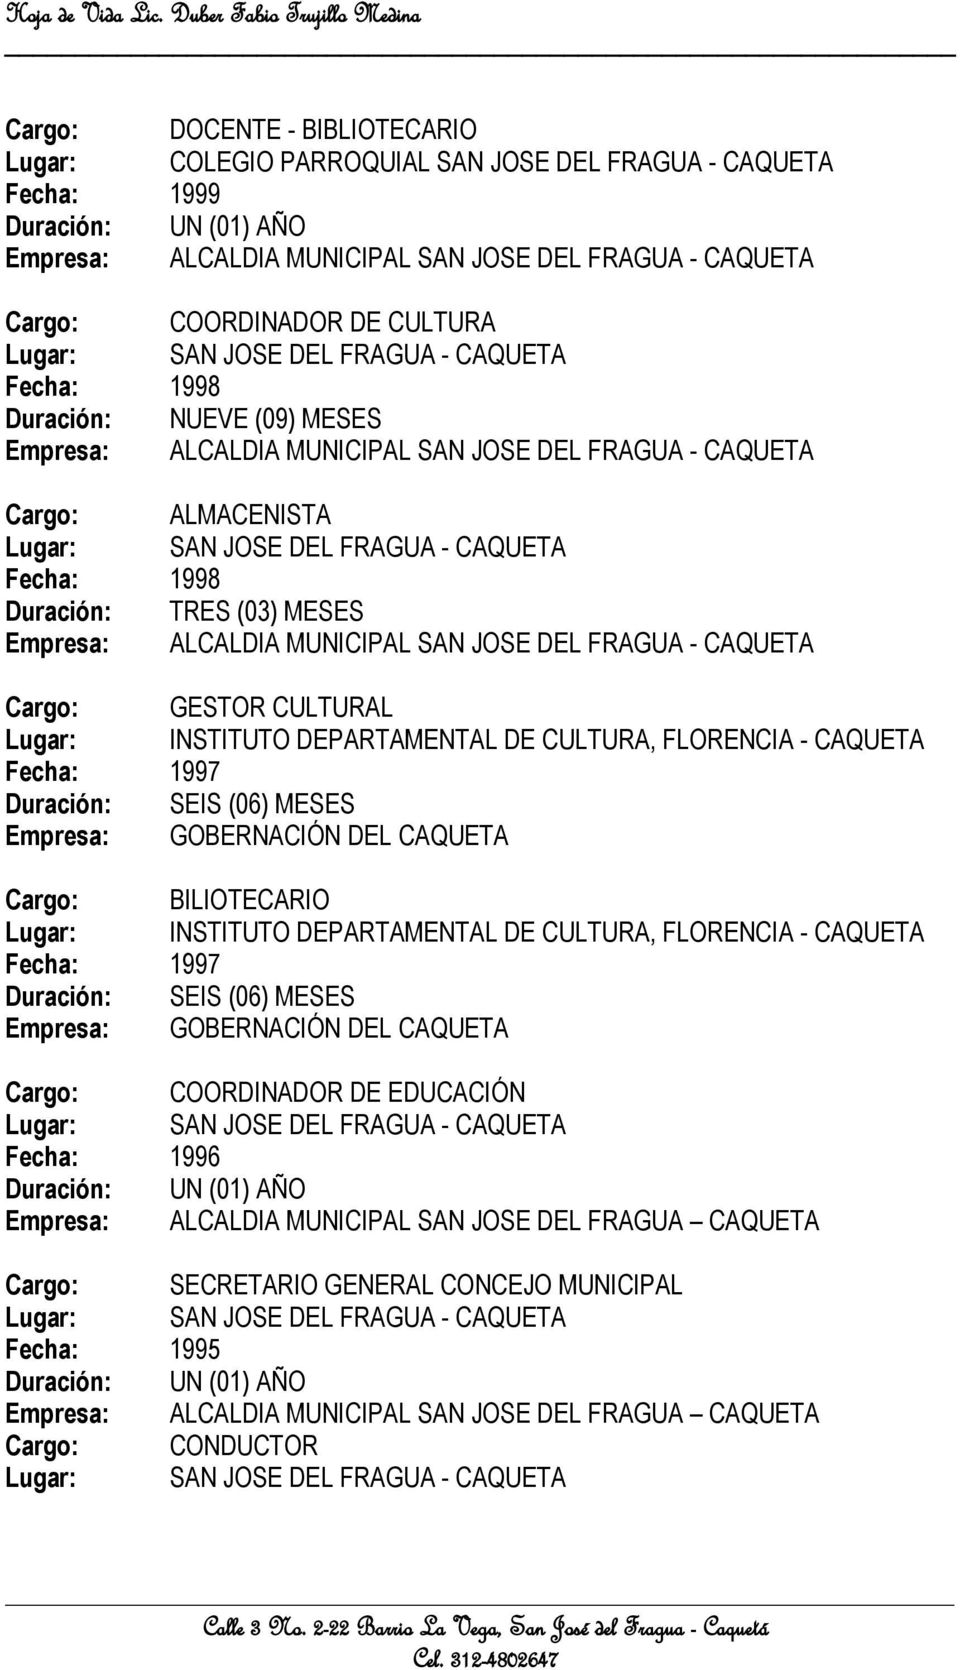 FLORENCIA - CAQUETA Fecha: 1997 Empresa: GOBERNACIÓN DEL CAQUETA Cargo: BILIOTECARIO Lugar: INSTITUTO DEPARTAMENTAL DE CULTURA, FLORENCIA - CAQUETA